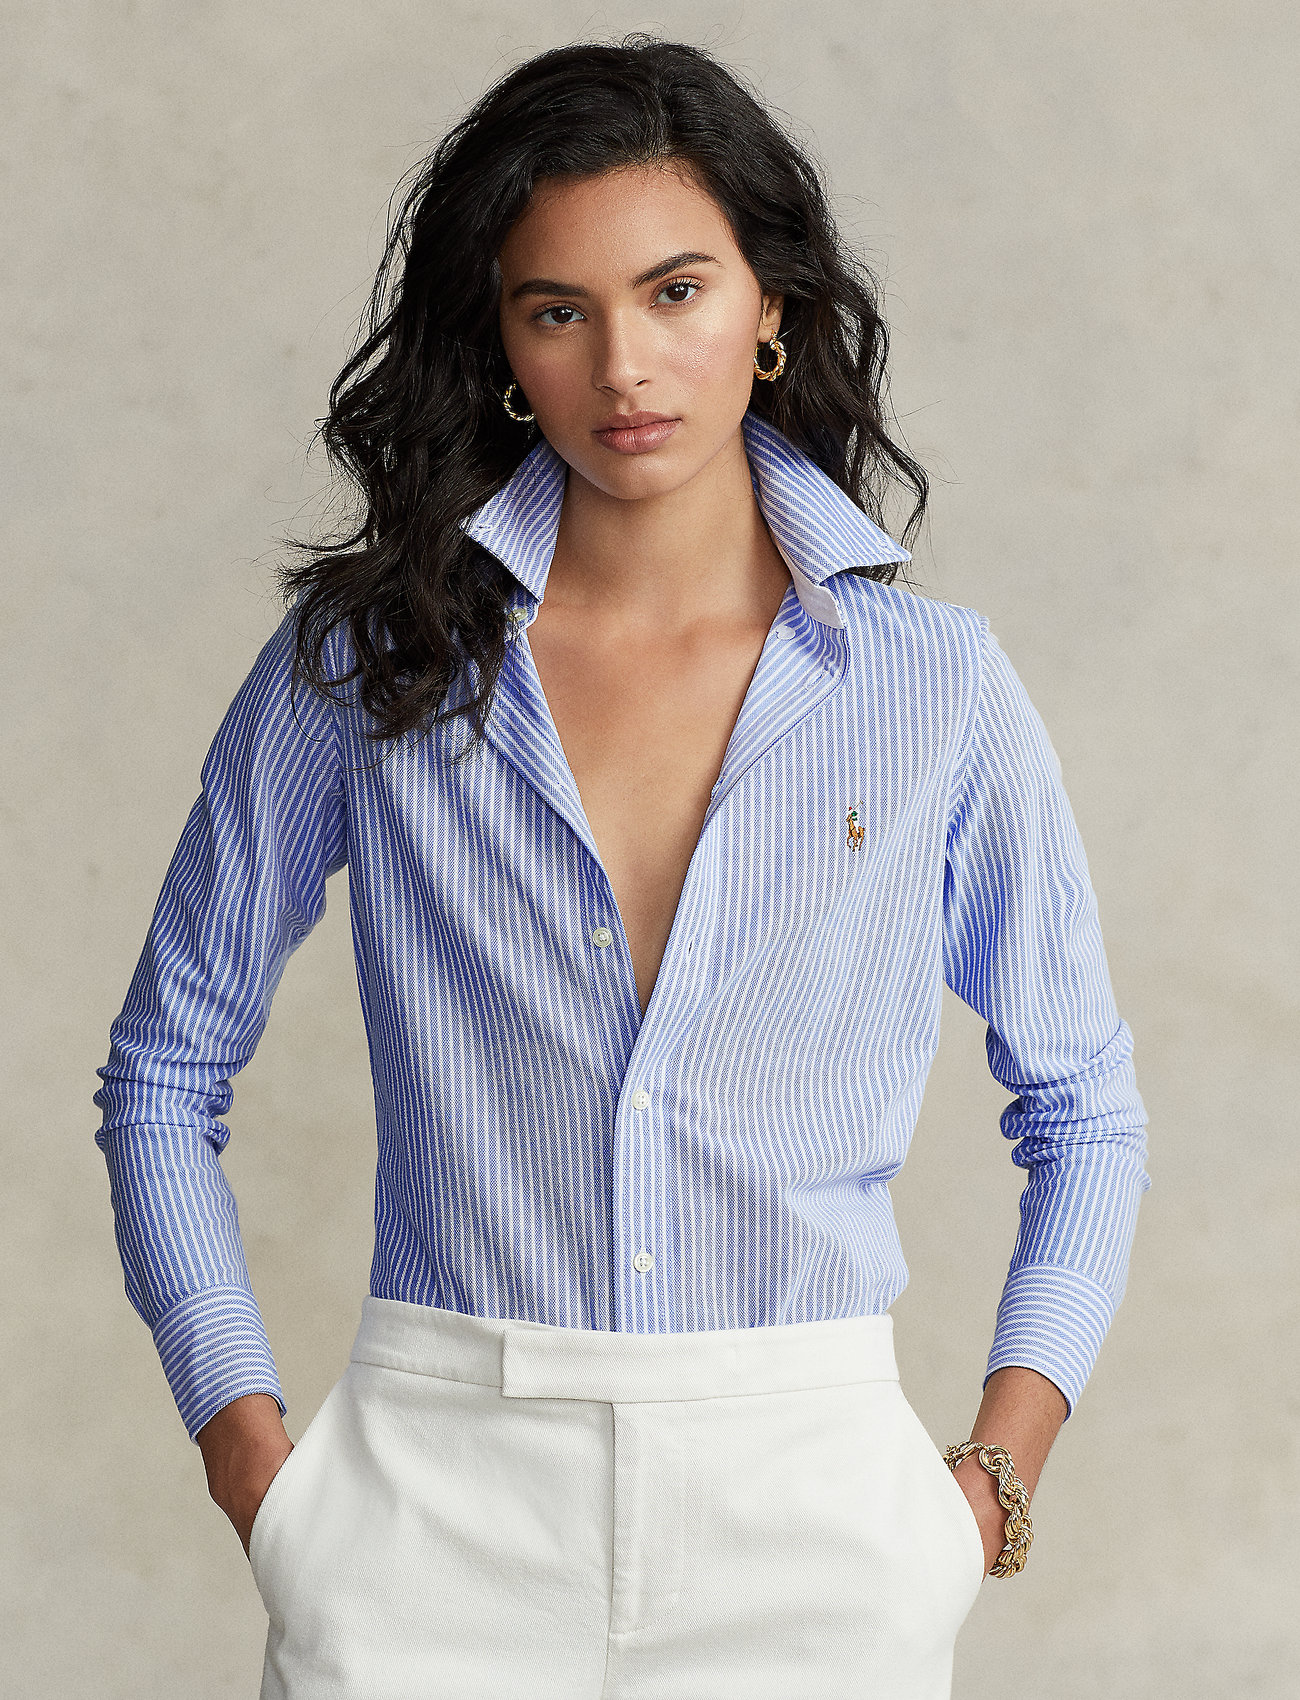 Cheap Ralph Lauren Shirts Womens Hotsell | website.jkuat.ac.ke